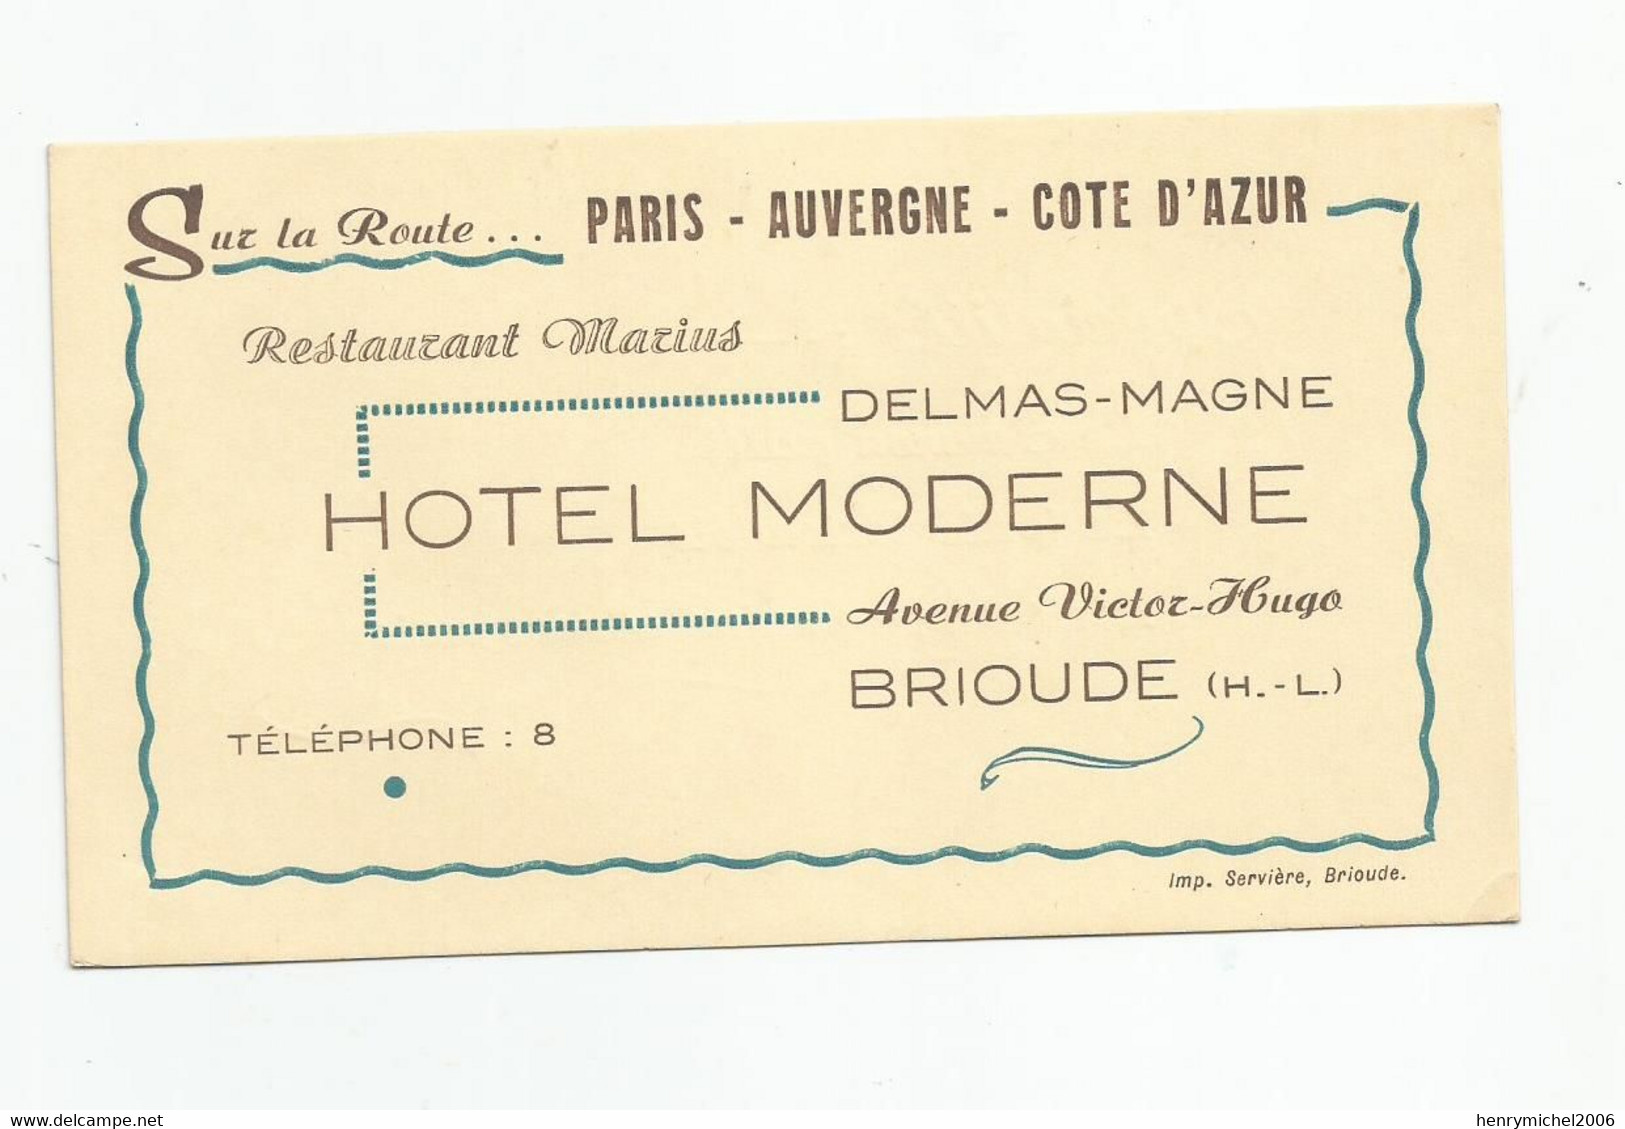 Carte De Visite Brioude Hotel Moderne Delmas Magne Restaurant Marius Avenue Victor Hugo Cdv 14 X8 Cm ( 43 Haute Loire ) - Tarjetas De Visita